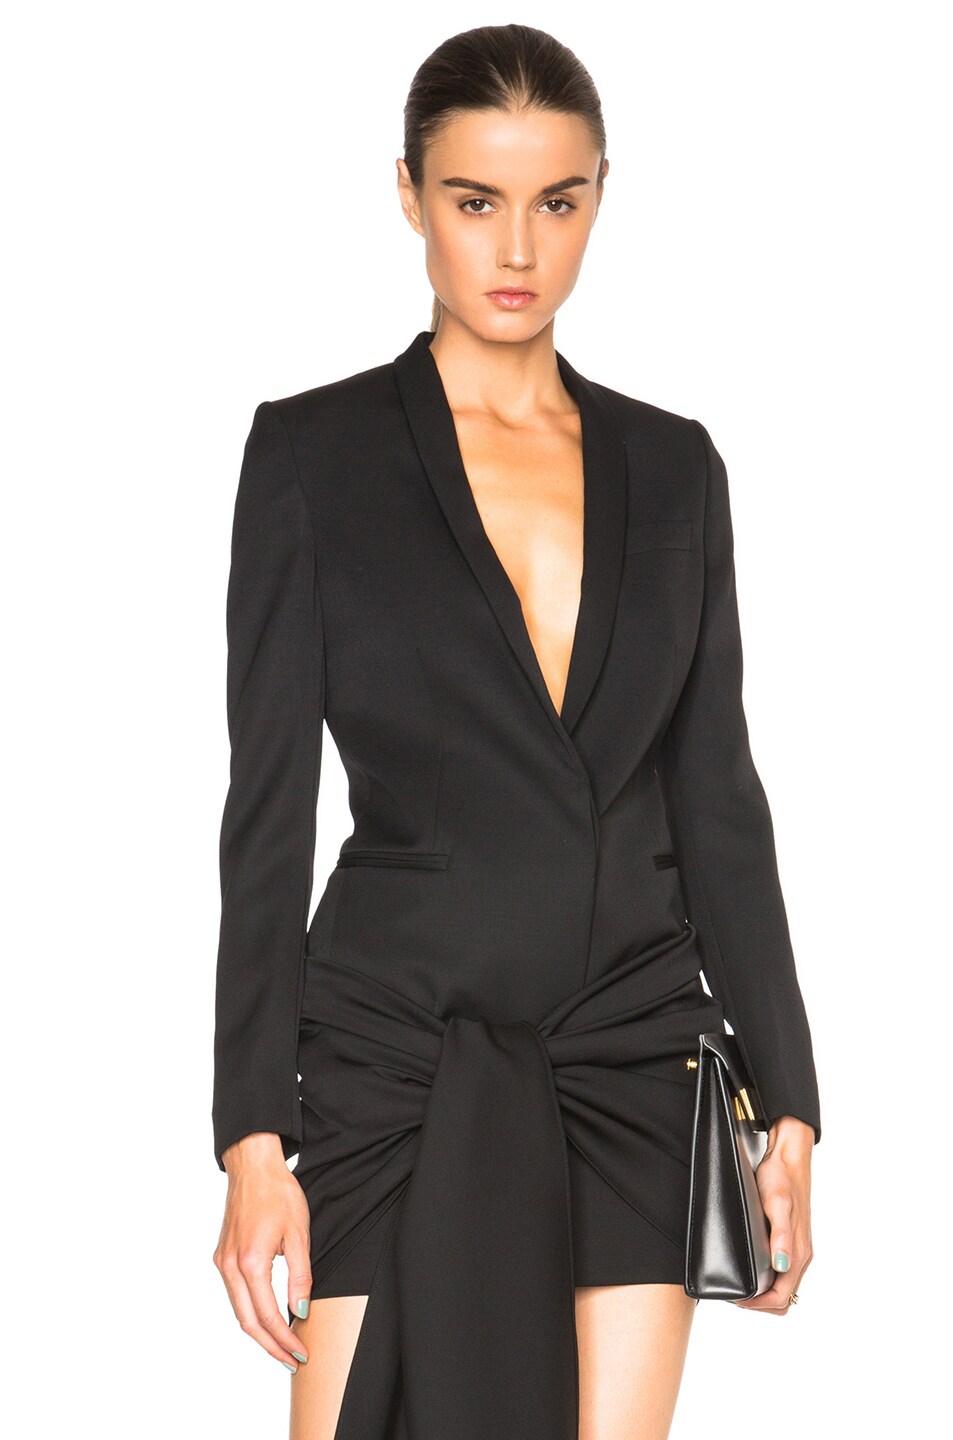 Stella McCartney Tuxedo Cloth Isla Jacket in Black | FWRD